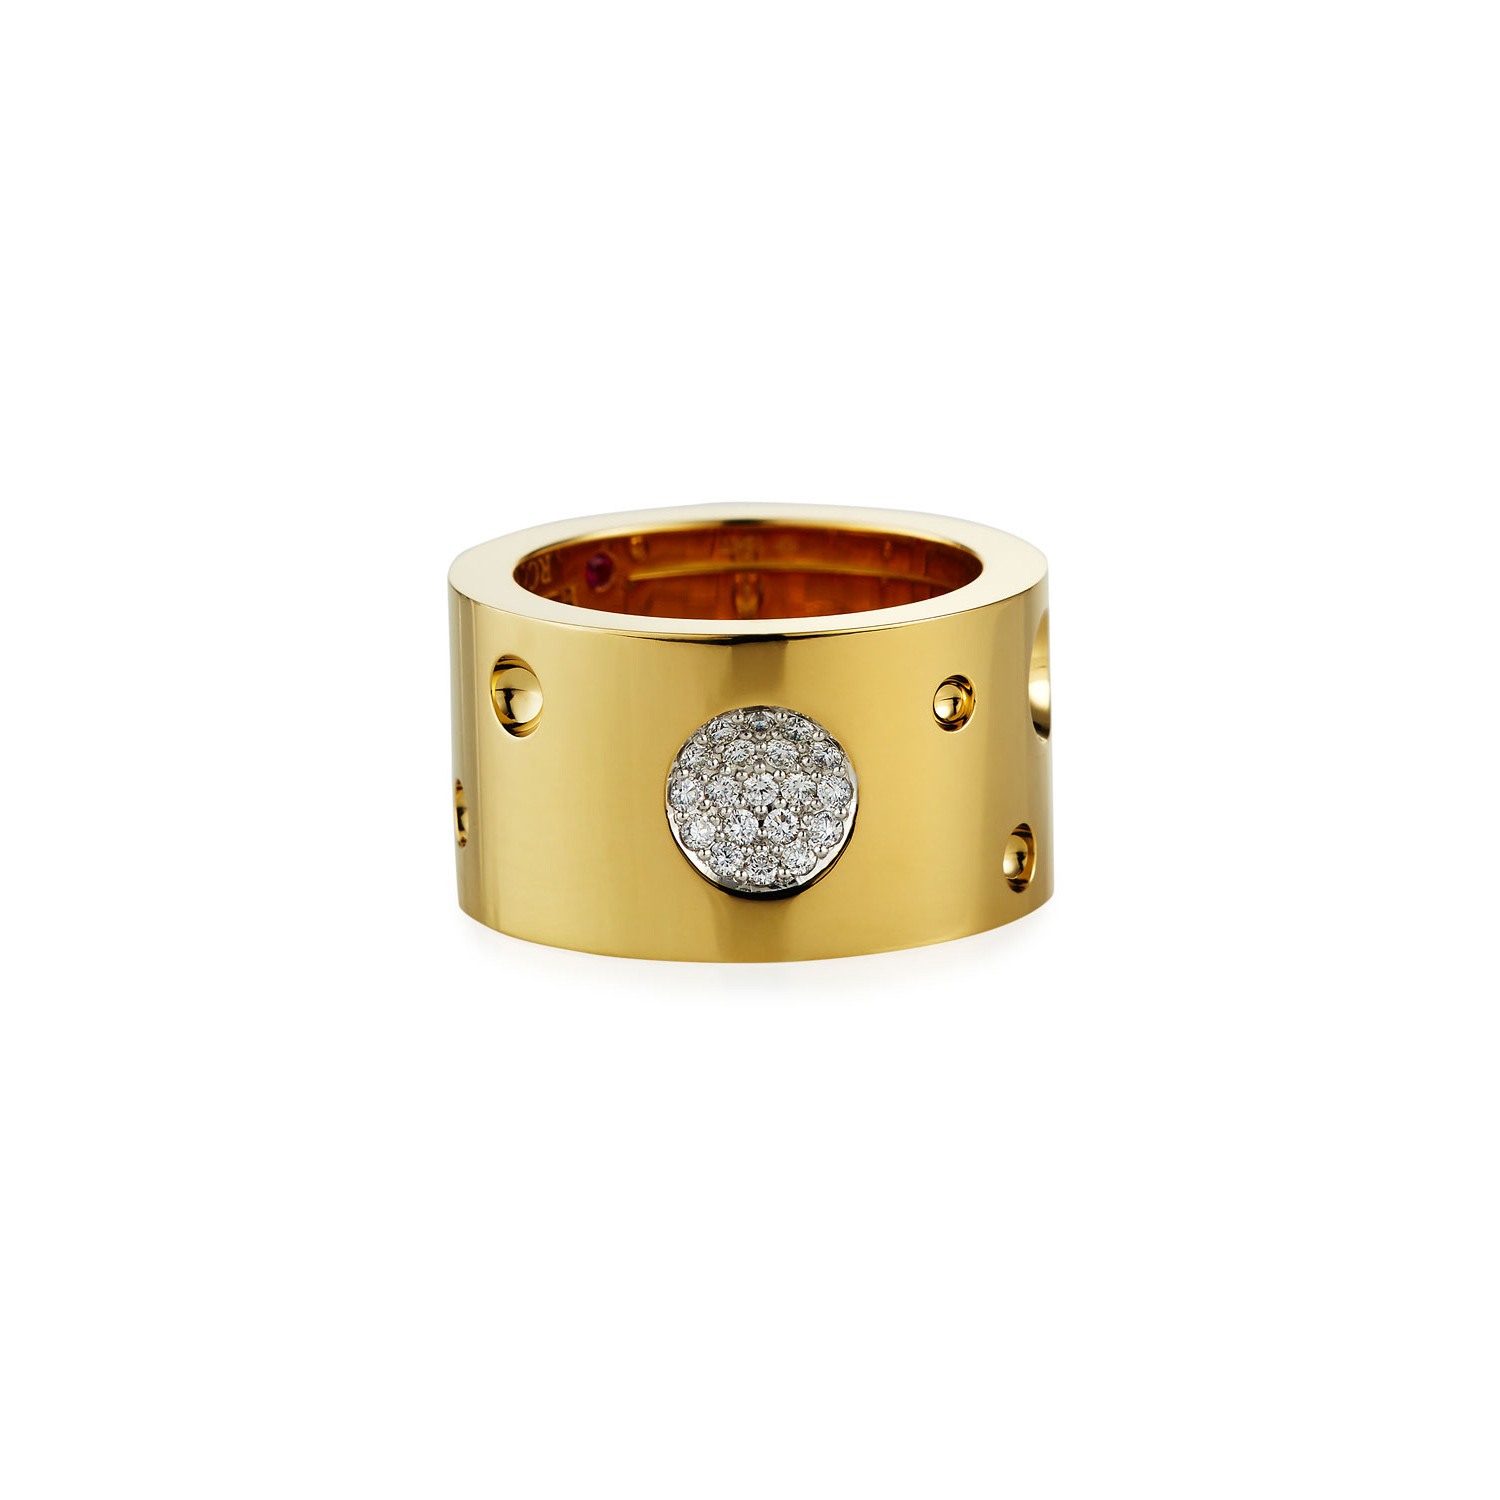 Groothandel OEM / ODM Juweliersware Pasgemaakte 18k goud en diamantring vroue se fyn juweliersware-ontwerper